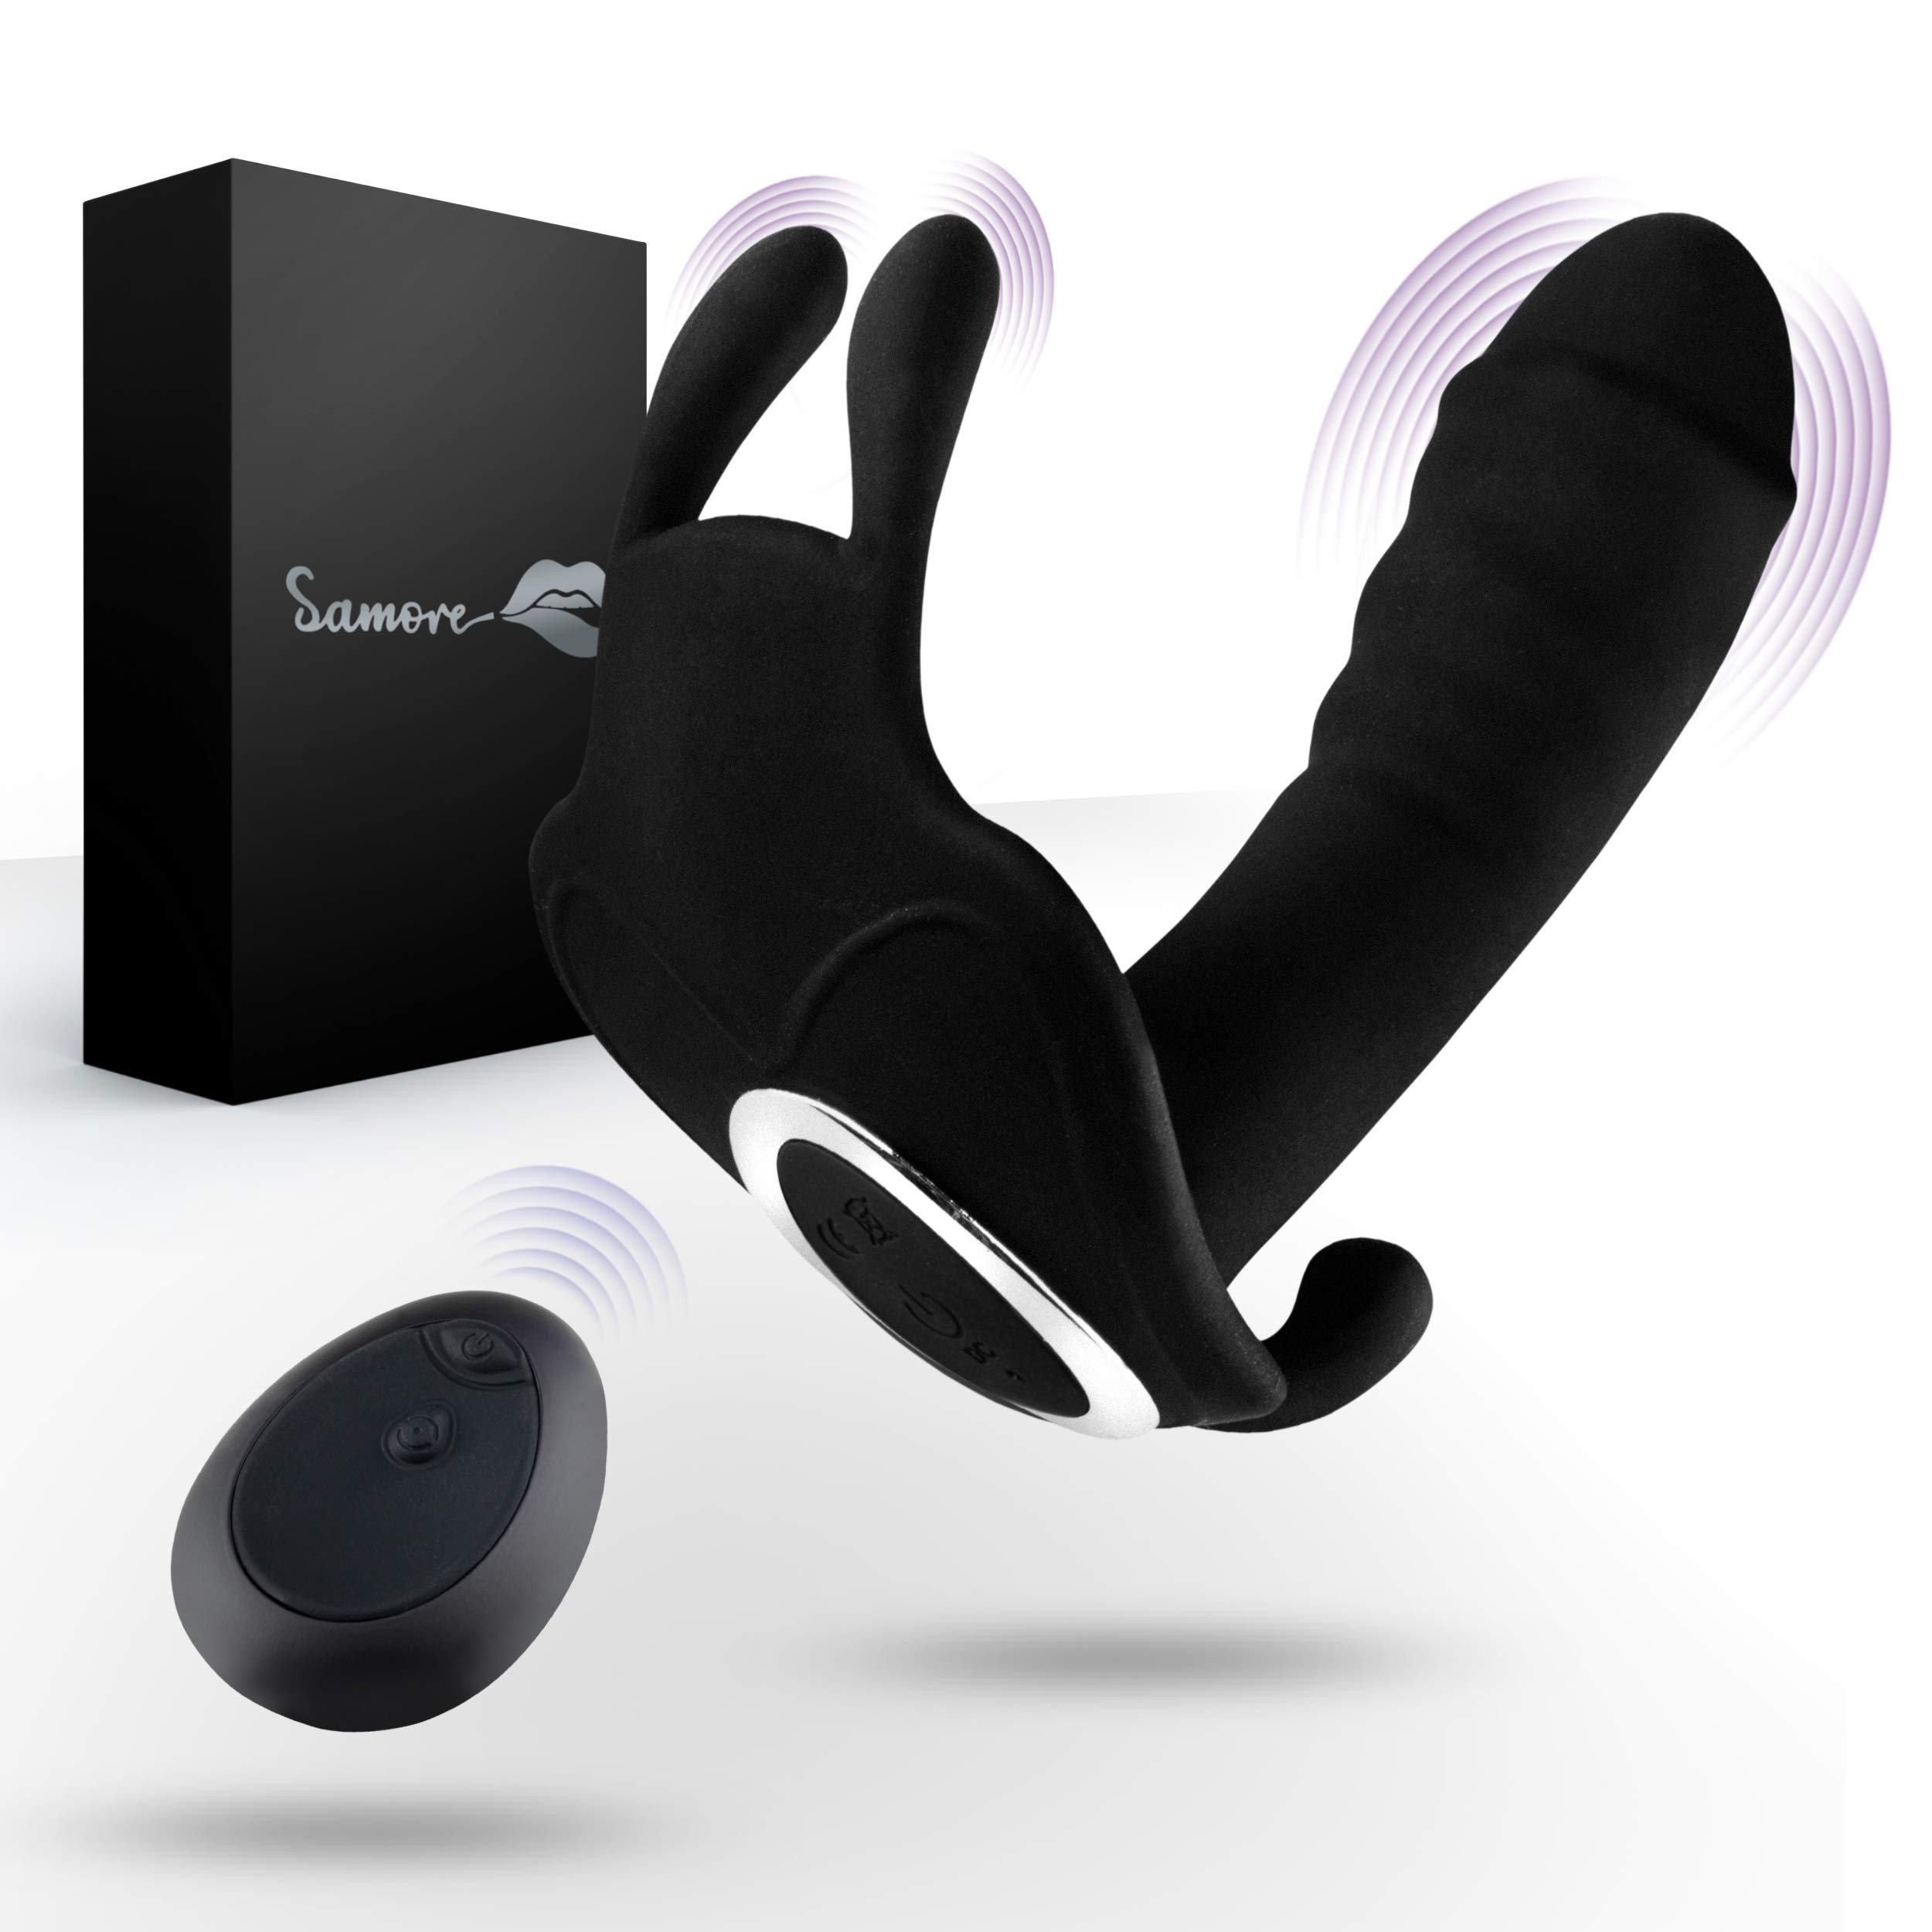 Samore ® Butterfly Vibrator – Sexspielzeug mit [10] Vibrationsmodi – wasserdichte Butterfly Vibratoren – mit Fernbedienung - inklusive Ladekabel und Samtbeutel (12x3.5x6.5cm)